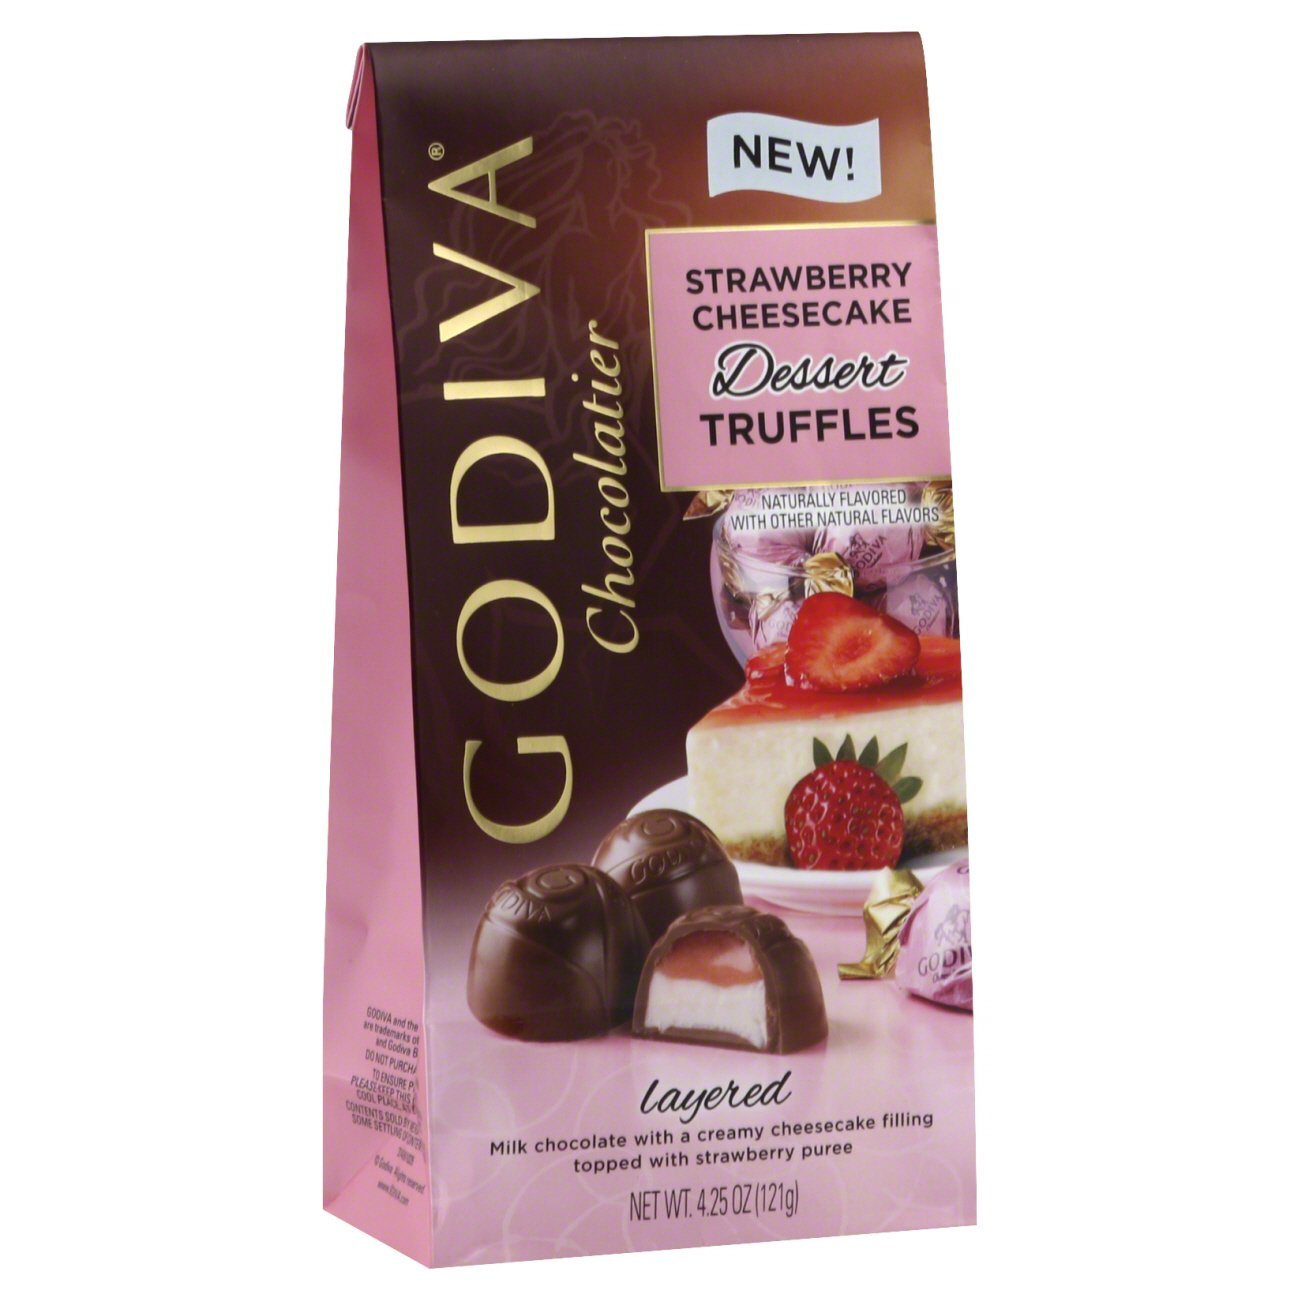 godiva chocolate truffle